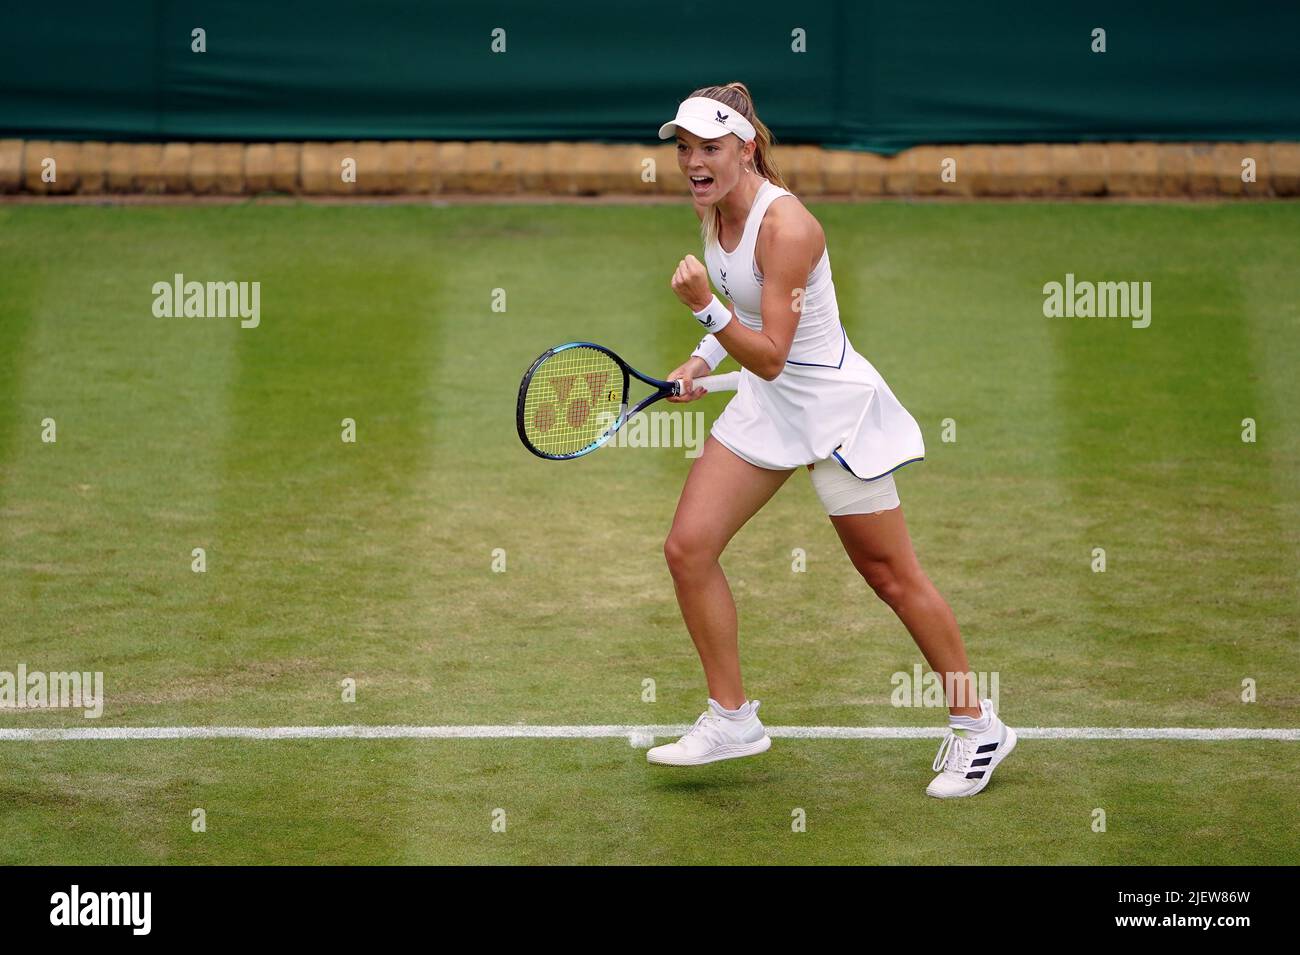 Katie Swan durante su partido contra Marta Kostyuk en el segundo día del Campeonato de Wimbledon de 2022 en el All England Lawn Tennis and Croquet Club, Wimbledon. Fecha de la foto: Martes 28 de junio de 2022. Foto de stock